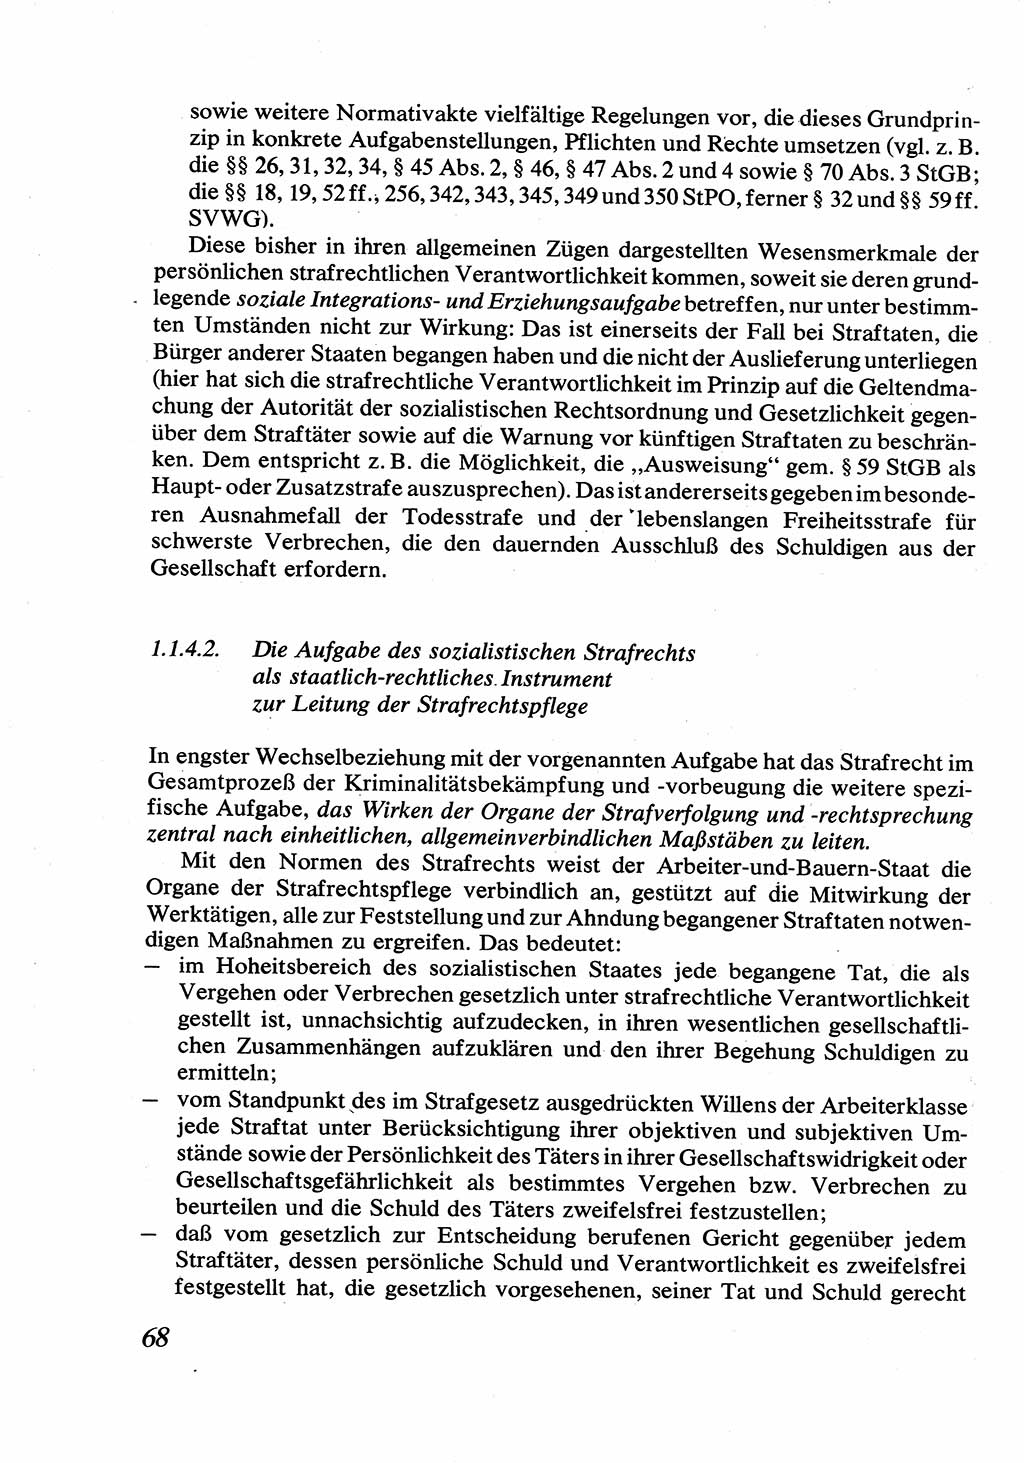 Strafrecht [Deutsche Demokratische Republik (DDR)], Allgemeiner Teil, Lehrbuch 1976, Seite 68 (Strafr. DDR AT Lb. 1976, S. 68)